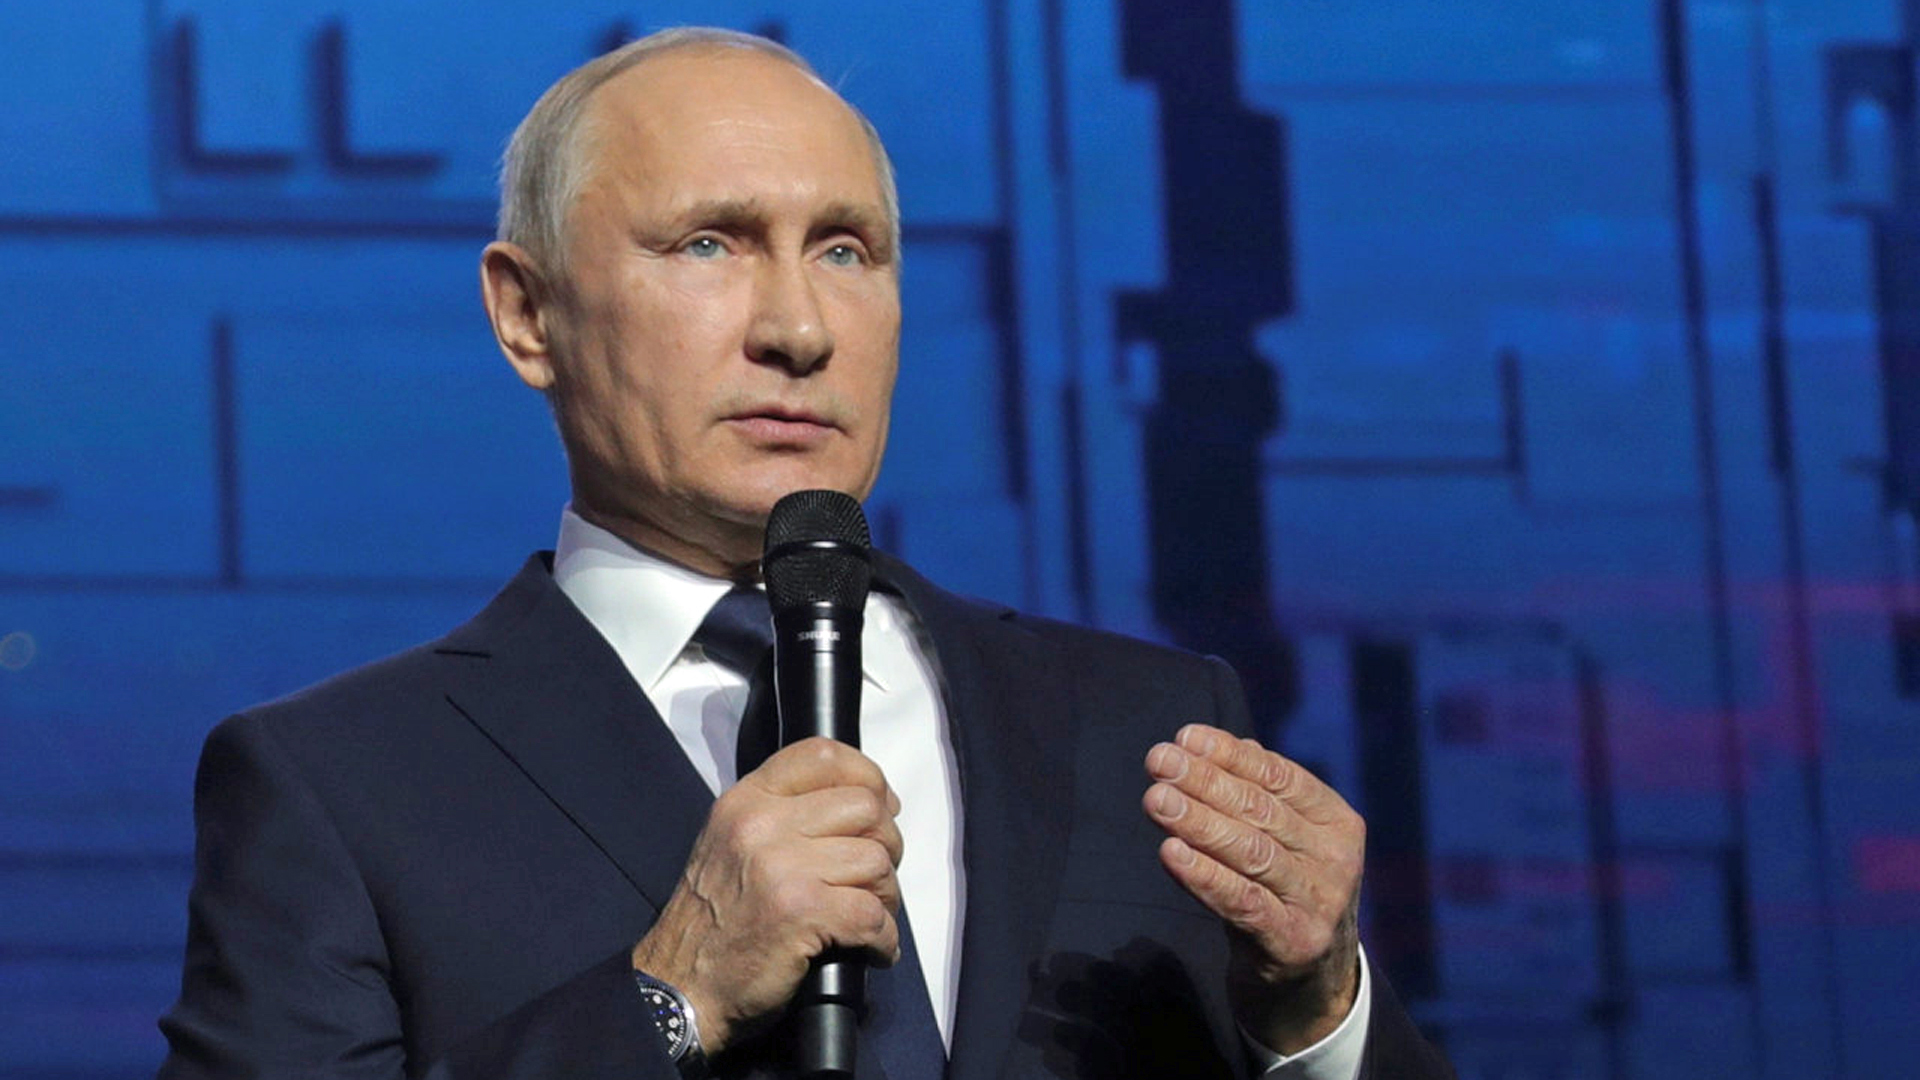 Russlands Präsident Putin spricht bei einer Veranstaltung in ein Mikrofon | Bildquelle: REUTERS